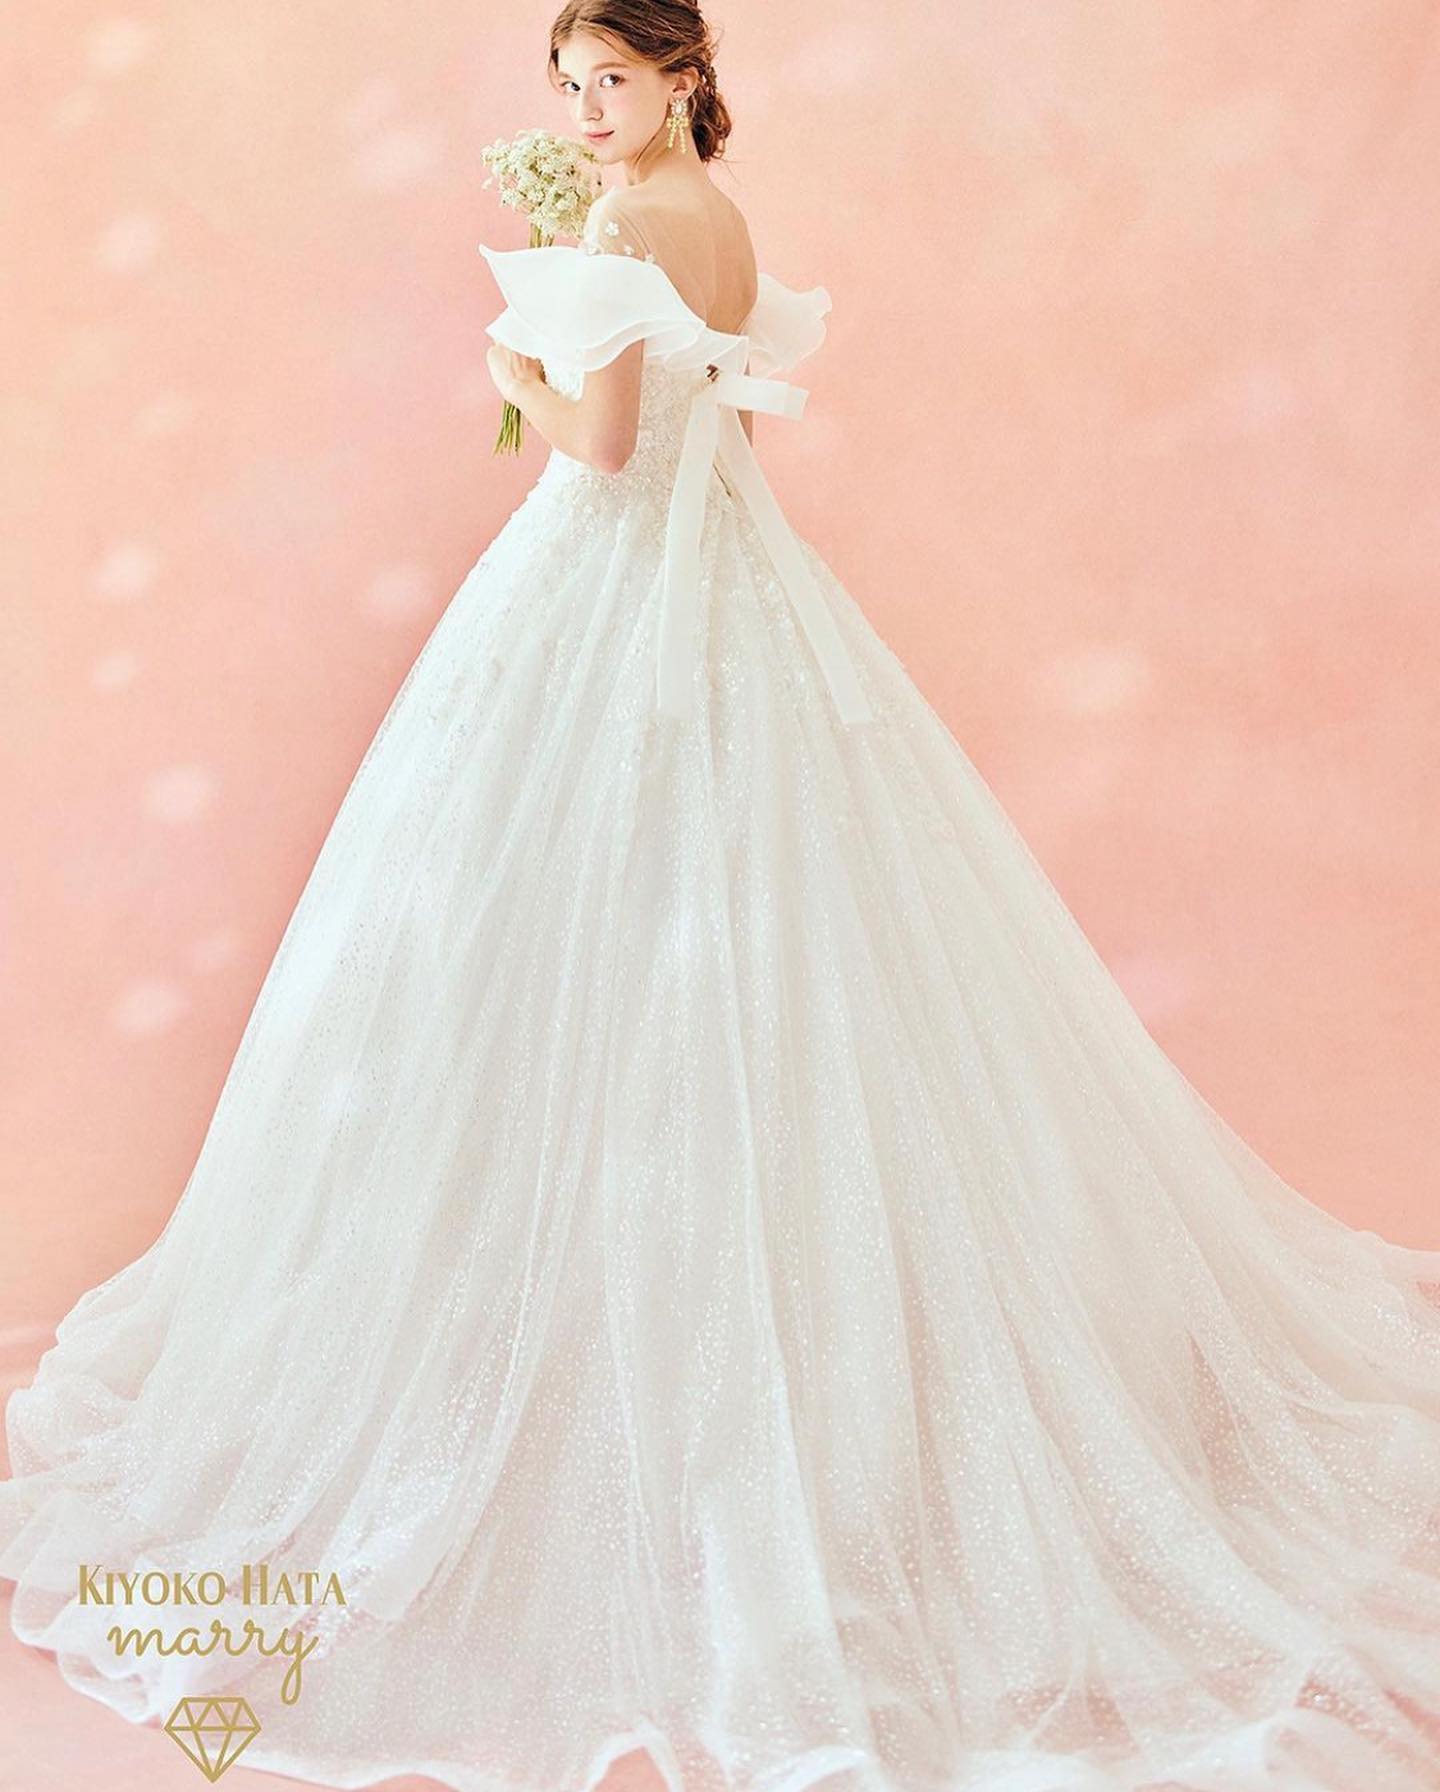 ・今日は大人気の#kiyokohata のドレスをご紹介ウェディングドレス 【KIYOKO HATA】KH-0034 オフＷ　天使のドレス天使の羽をイメージした、ひらひらオーガンジーのオフショルダーのドレス デコルテに散らしたビジューで縫われた小さなお花も ロマンチックです バックのリボンのホースのような立体感も珍しいデザインです ドレスの本体の上半身には グリッターの上に小花を散らしたレースをあしらっています🤍ひらひらの衿はヨークと一緒に縫われていて、取り外し可能です。 フリルの衿を外すと 二の腕を通る細目の袖が付いたキラキラのAラインドレスになります。SNSアップ時の専用タグは『#天使のドレス』です。是非ご覧ください♡・#wedding #weddingdress #bridalhiro #ウェディングドレス #プレ花嫁 #ドレス試着　#ヘアメイク #結婚式 #ドレス選び #前撮り #後撮り #フォトウェディング　#ウェディングヘア #フォト婚 #前撮り写真　#ブライダルフォト #カップルフォト #ウェディングドレス探し #ウェディングドレス試着　#レンタルドレス #ドレスショップ #家族婚 #ブライダルヒロ #ゼクシィ #プリンセスライン #ドレス迷子 #星座ドレス #キヨコハタ